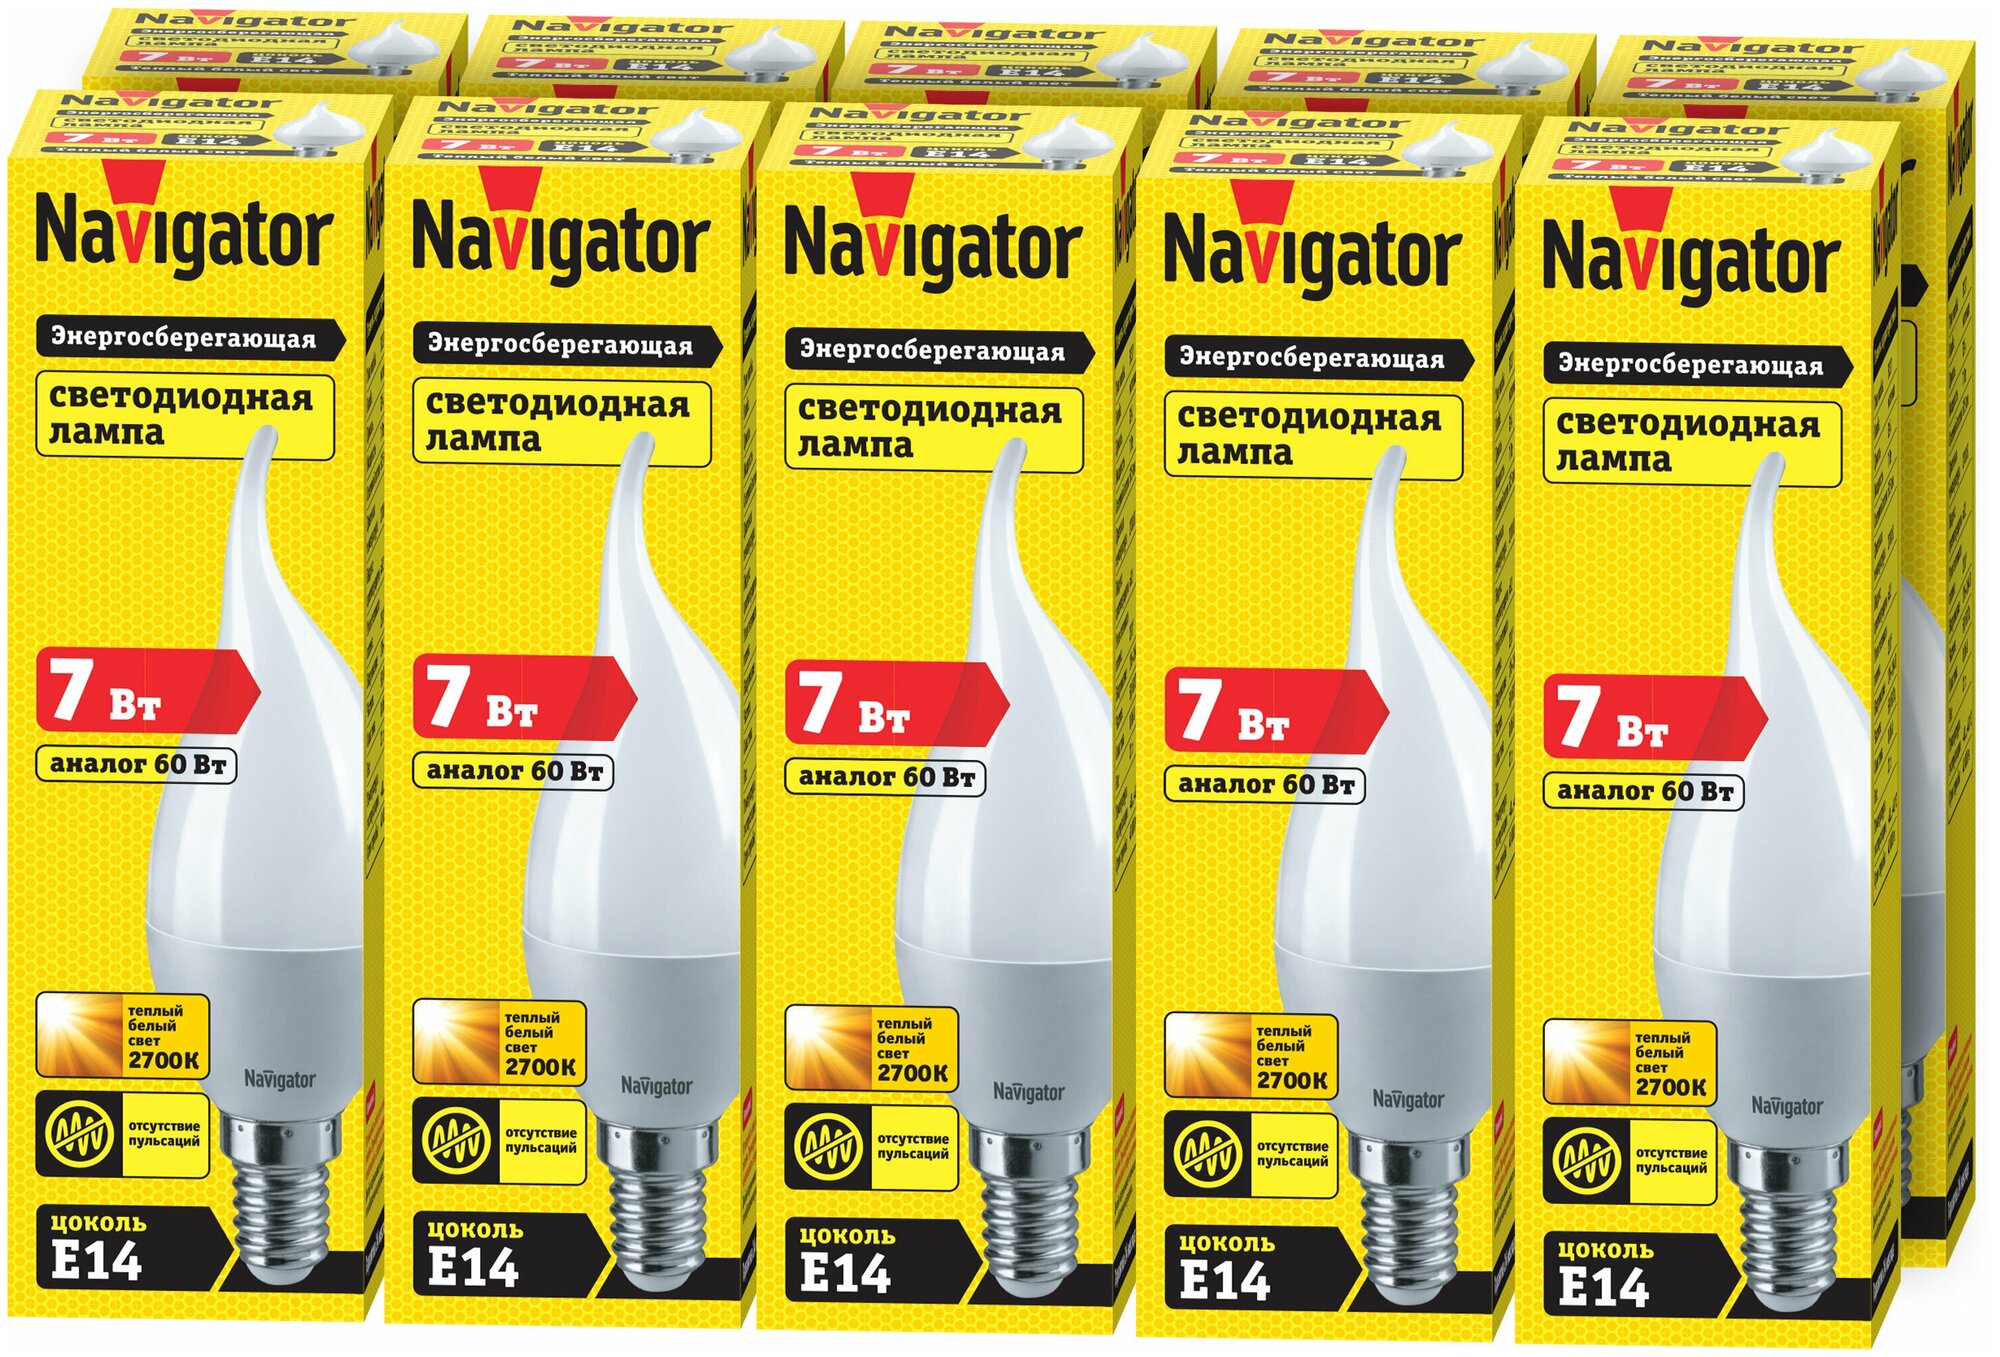 Лампа светодиодная Navigator 94 495, 7 Вт, свеча на ветру, Е14, теплый свет 2700К, упаковка 10 шт.